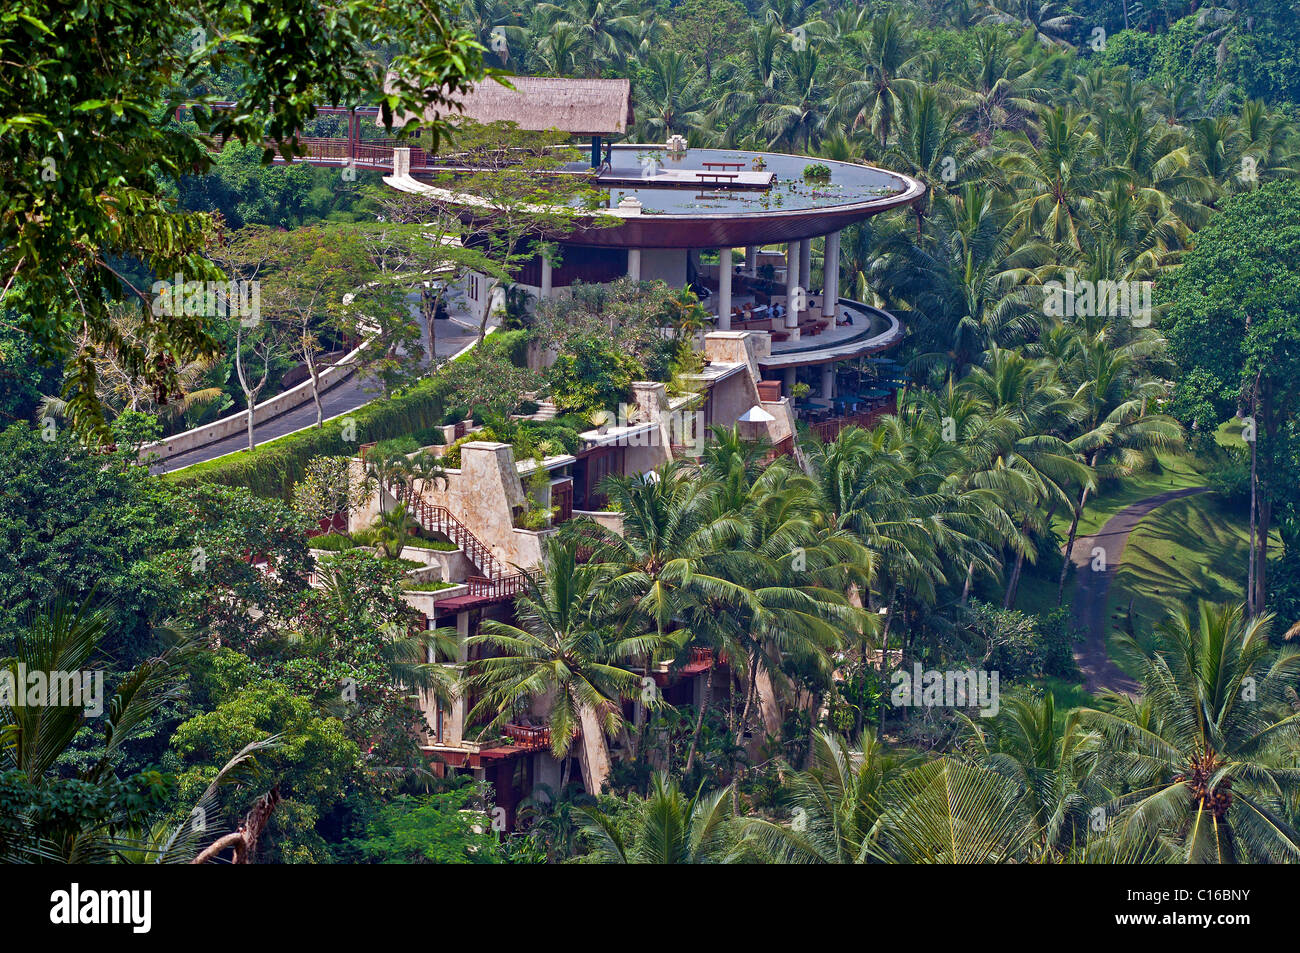 Le luxueux hôtel four Seasons est situé au milieu des rizières de Sayan dans la vallée de la rivière Ayung à Bali, en Indonésie Banque D'Images